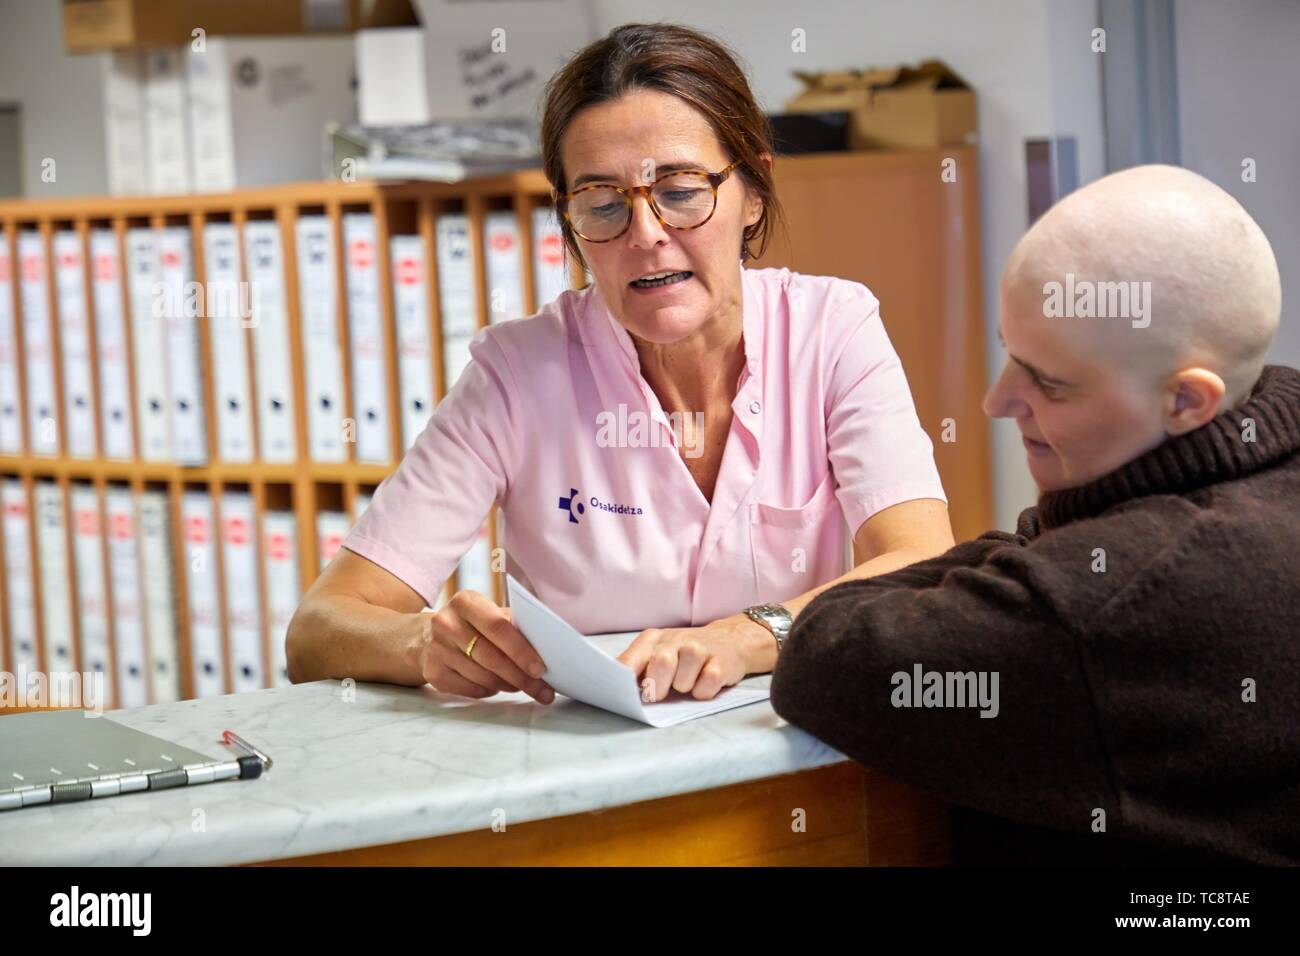 Aide infirmière assiste à la réception de l'hôpital de patients atteints du cancer, de l'oncologie, l'hôpital Donostia, San Sebastian, Gipuzkoa, Pays Basque, Espagne Banque D'Images